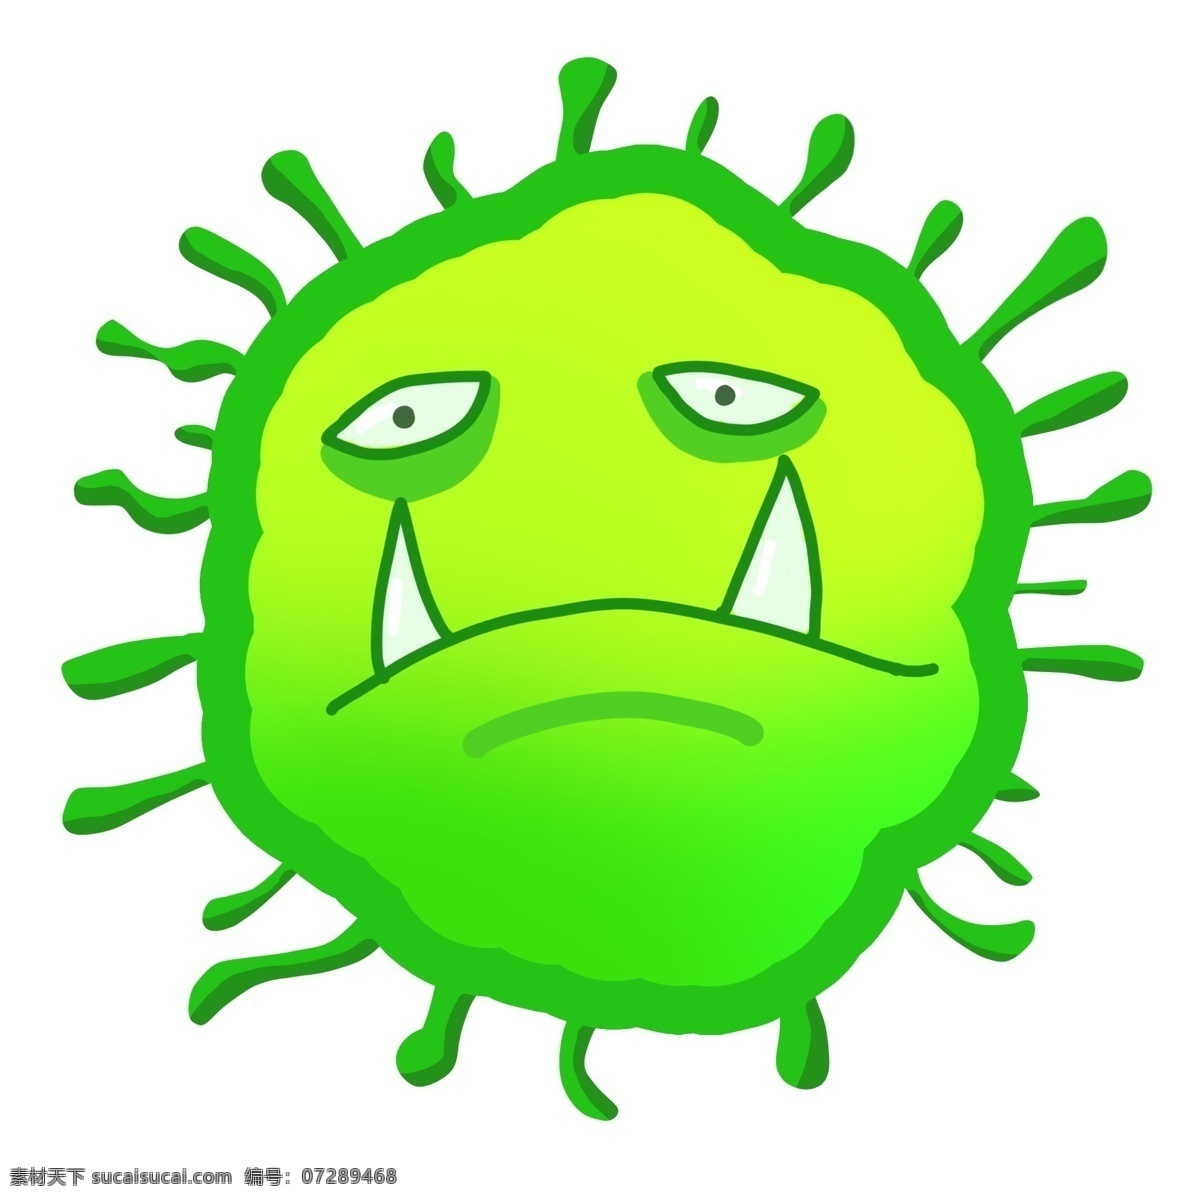 绿色 有害 细菌 插画 绿色的细菌 卡通插画 有害细菌 细菌插画 病菌插画 病菌细菌 尖尖的牙齿